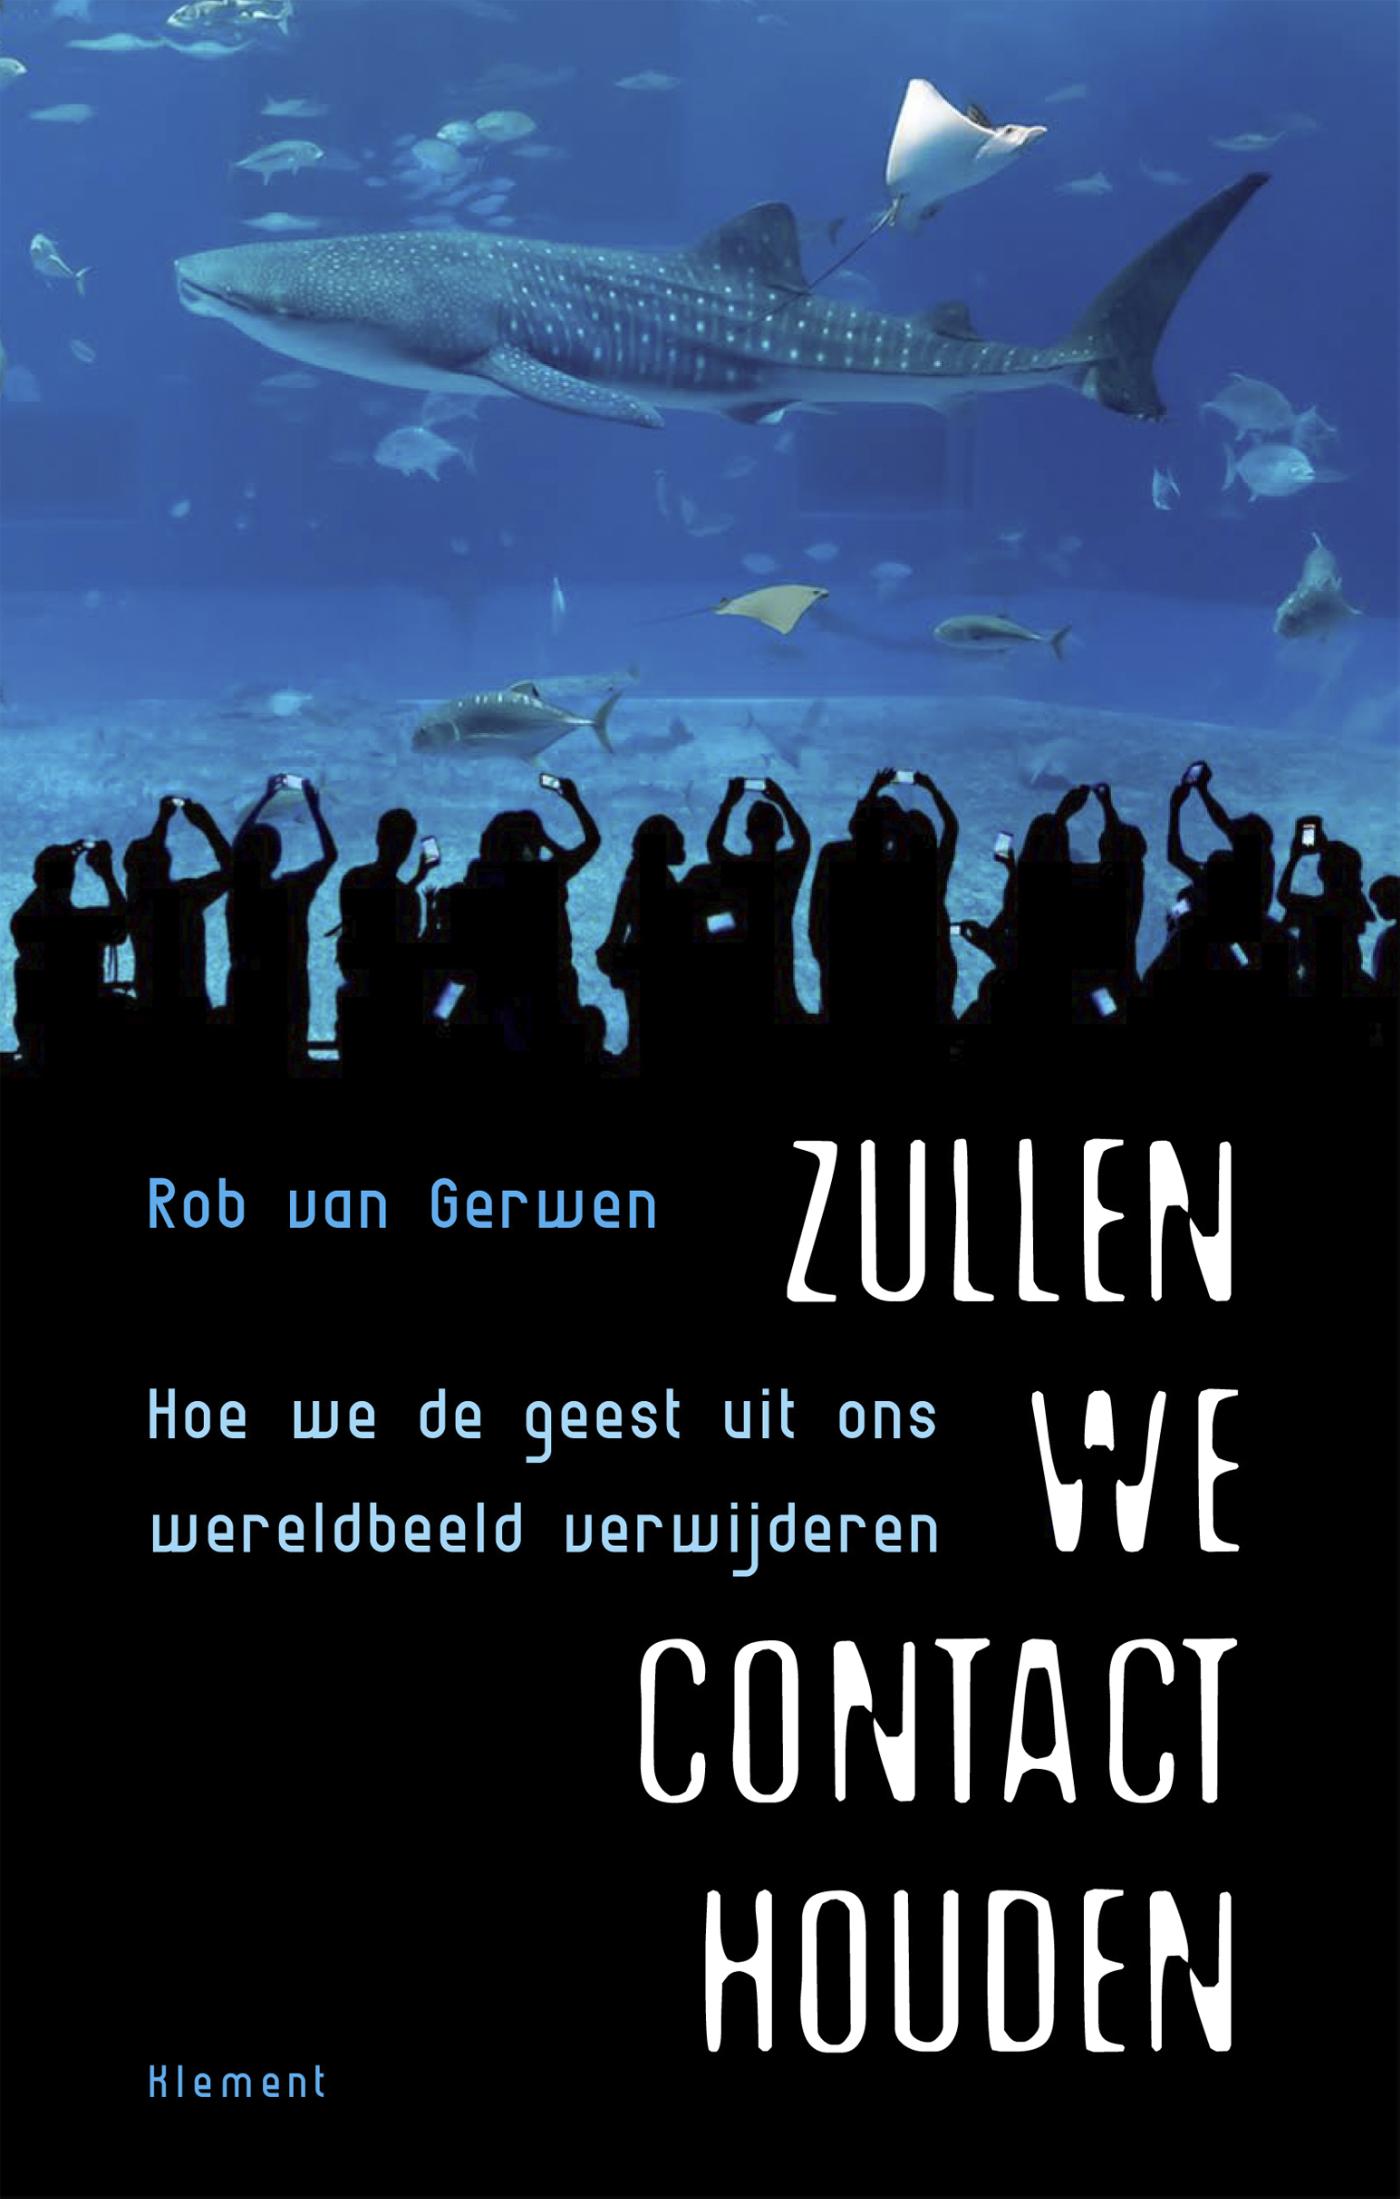 Rob van Gerwen: Zullen we contact houden